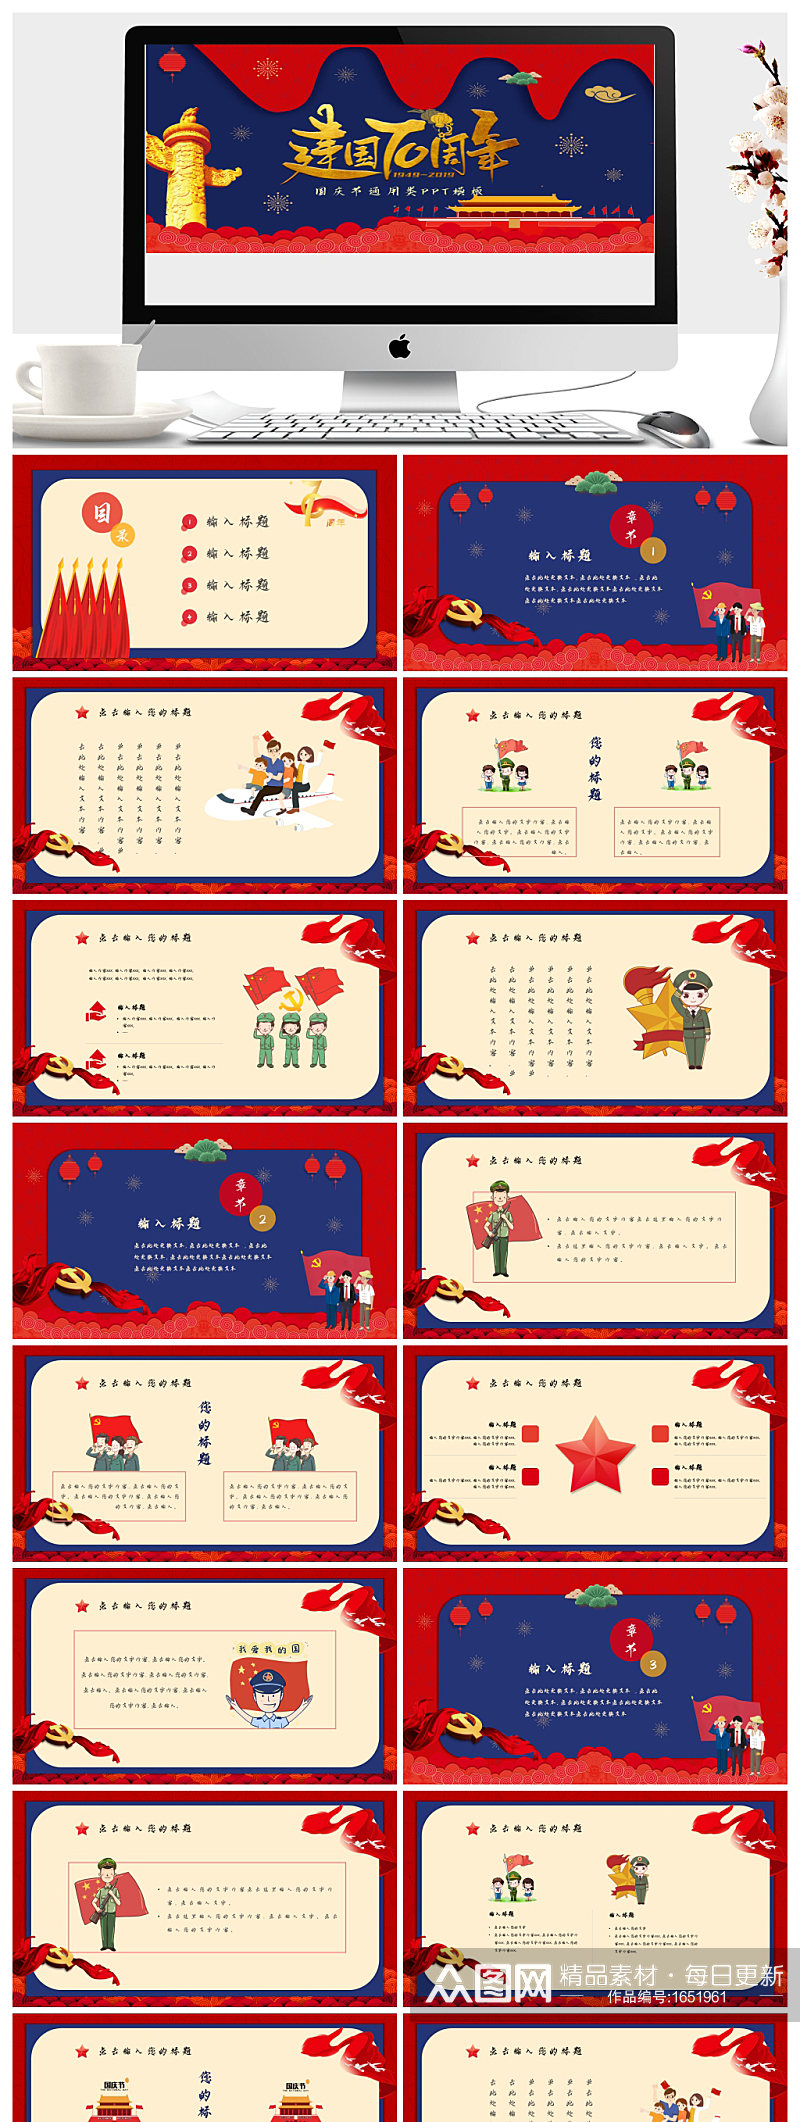 建党100周年通用的中国节日模板ppt素材